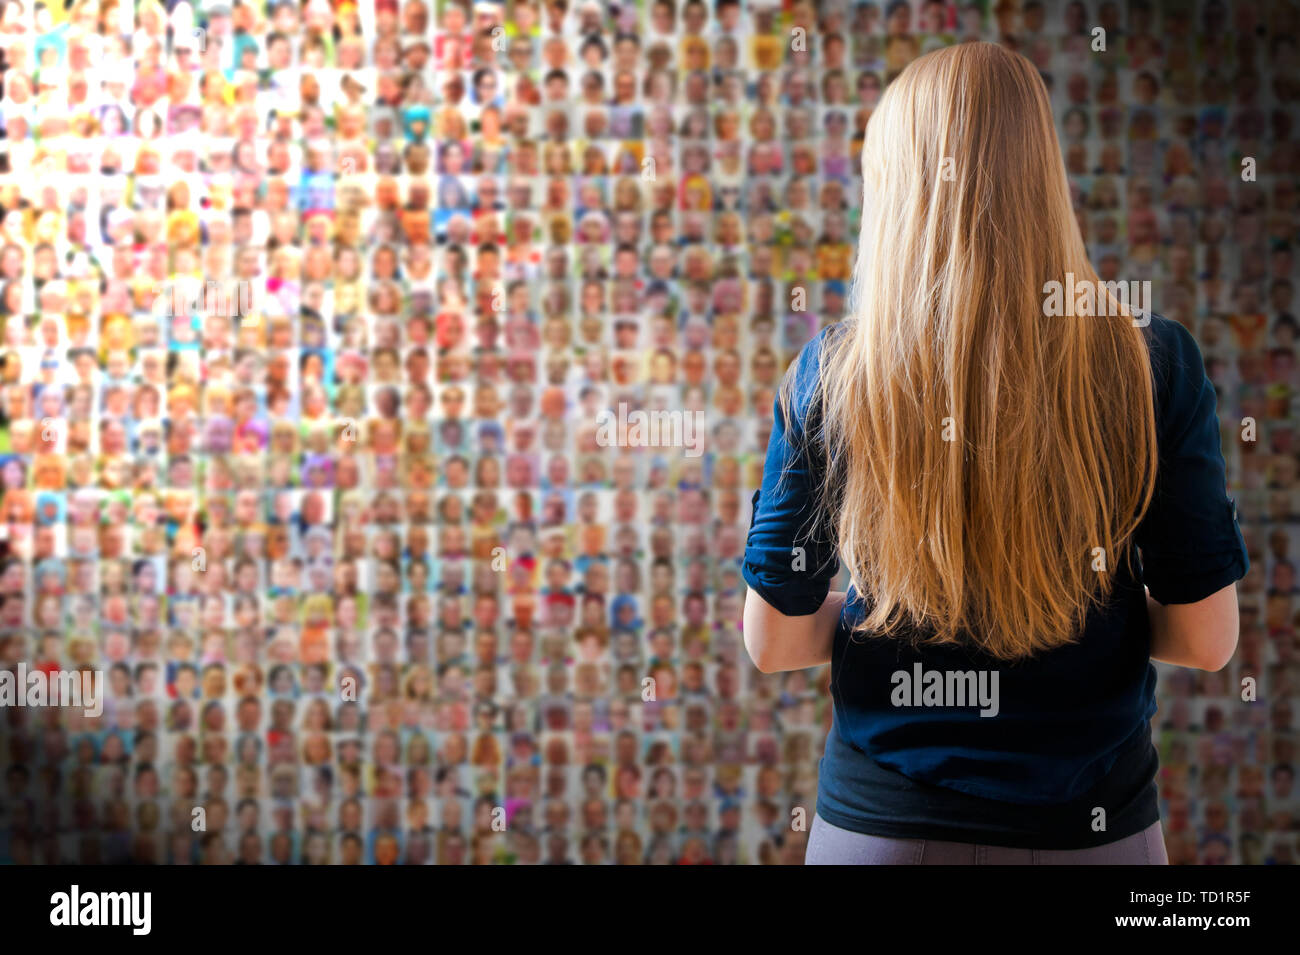 Blonde Frau vor einem Bildschirm oder einer Wand mit Tausenden von Menschen Gesichter - soziales Netzwerk und soziale Medien Konzept Stockfoto